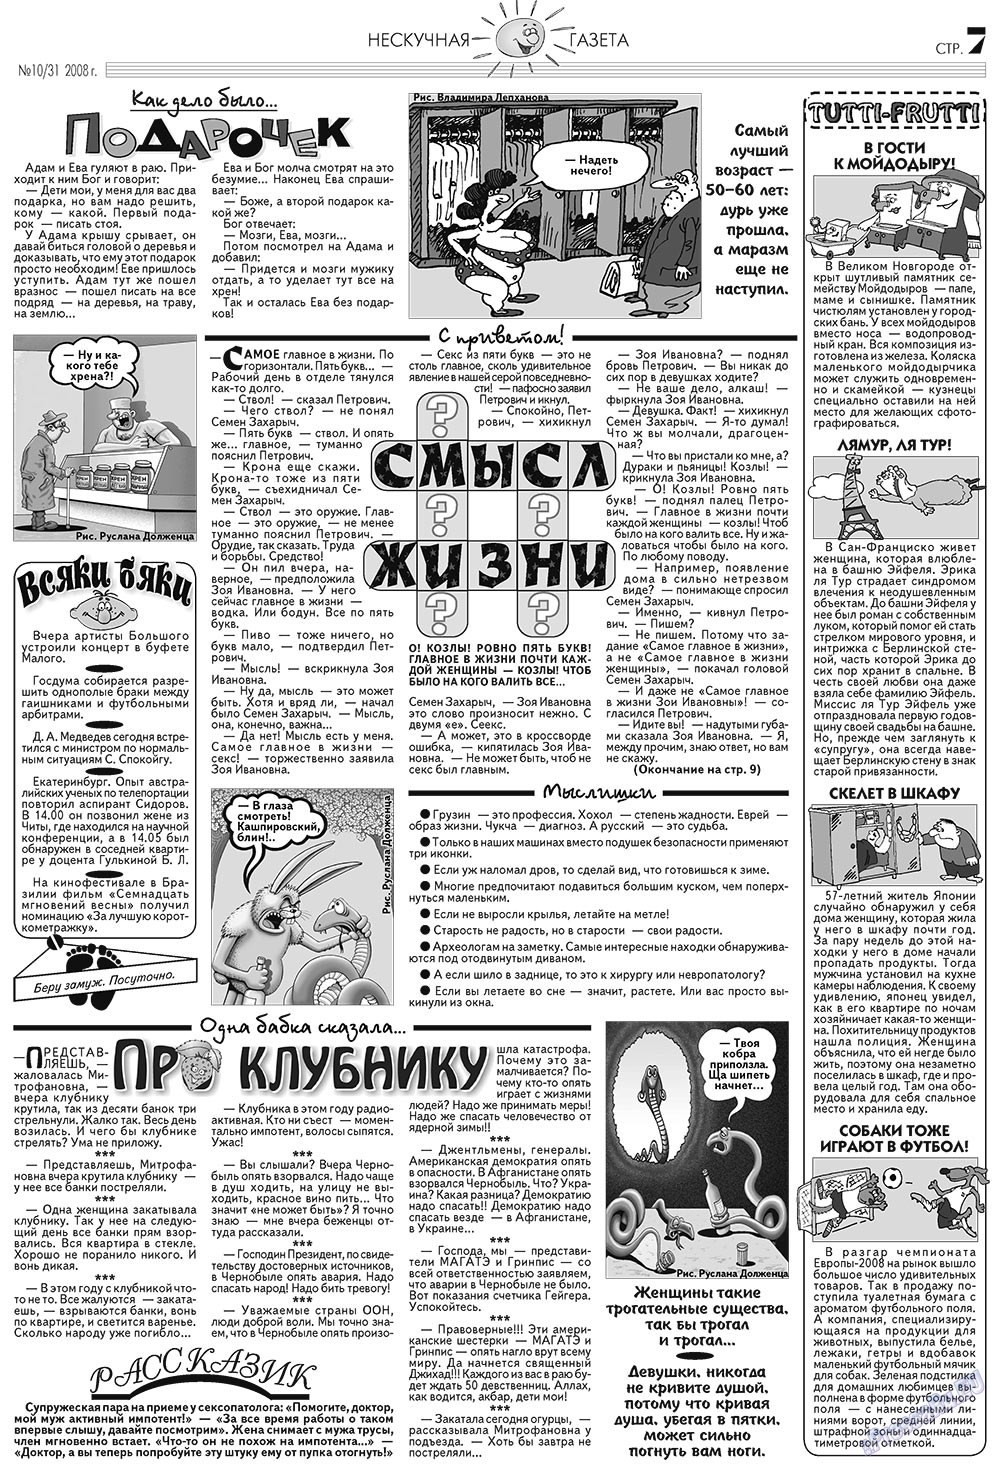 Нескучная газета, журнал. 2008 №10 стр.7